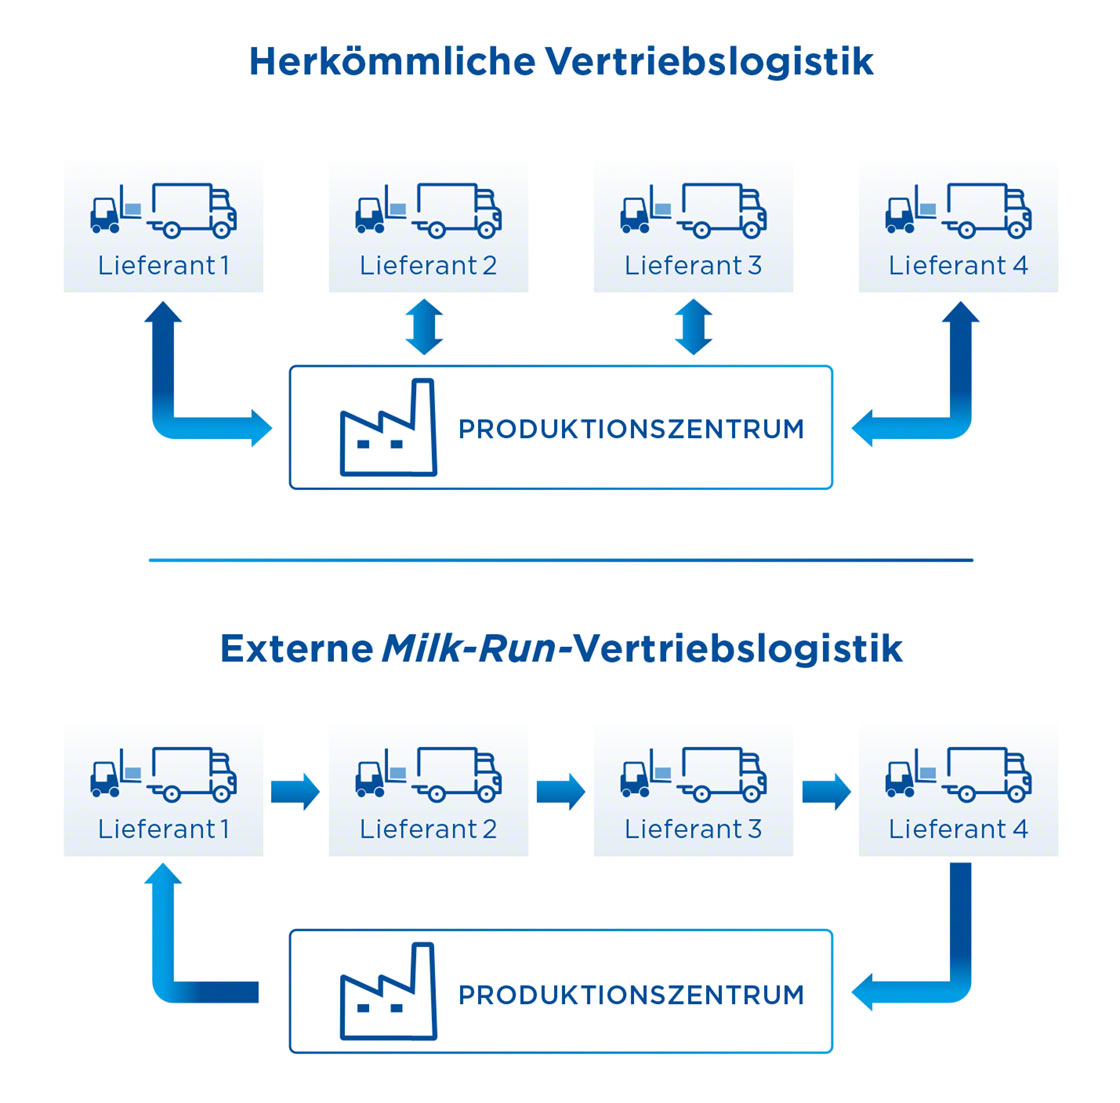 La logística milk run exige una planificación que contemple las diferentes paradas para cargar y descargar mercancía